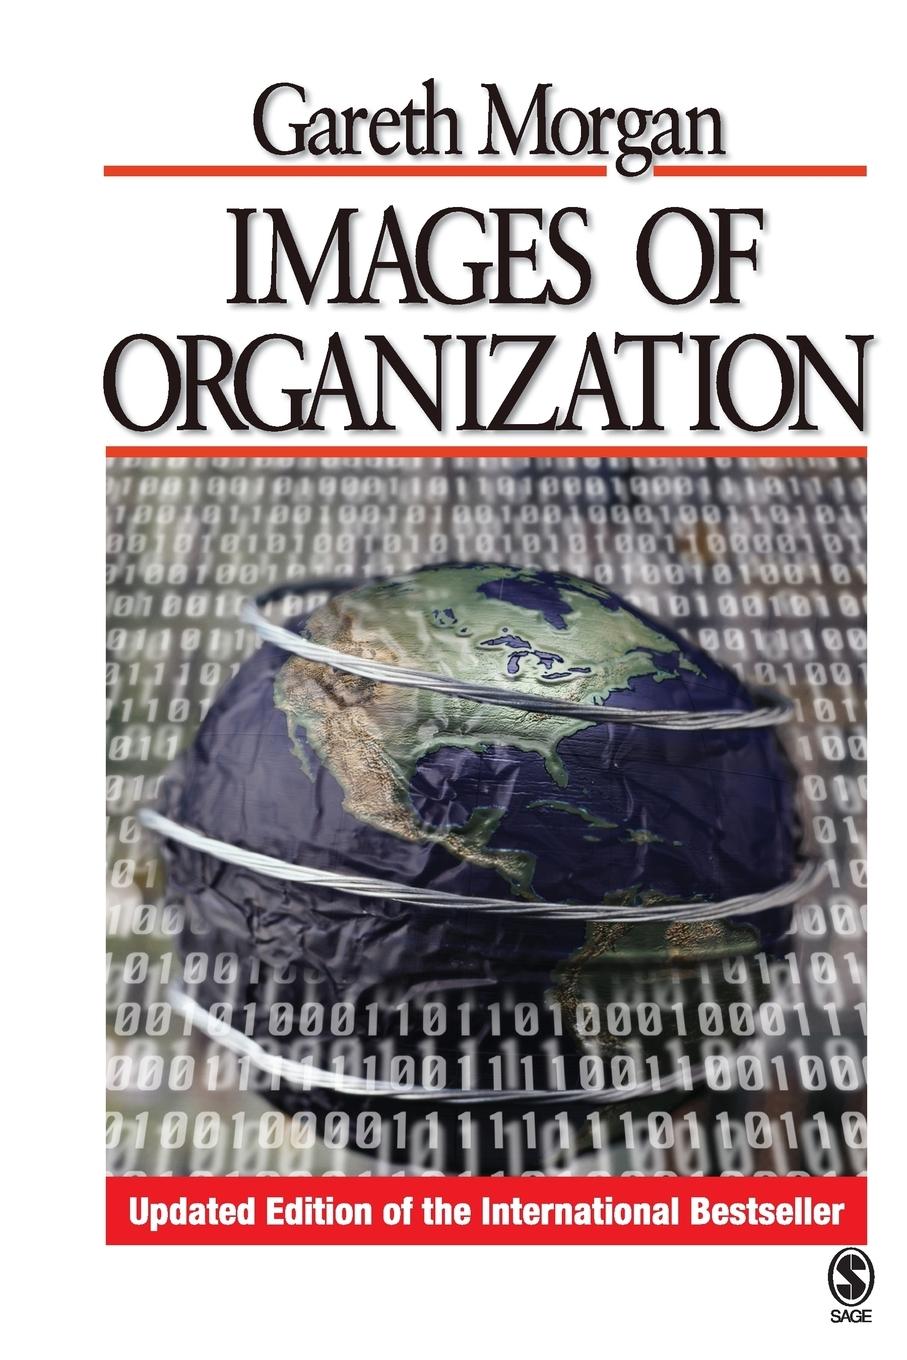 Images of Organization | Gareth Morgan | Taschenbuch | Paperback | Kartoniert / Broschiert | Englisch | 2006 | Sage Publications, Inc | EAN 9781412939799 - Morgan, Gareth